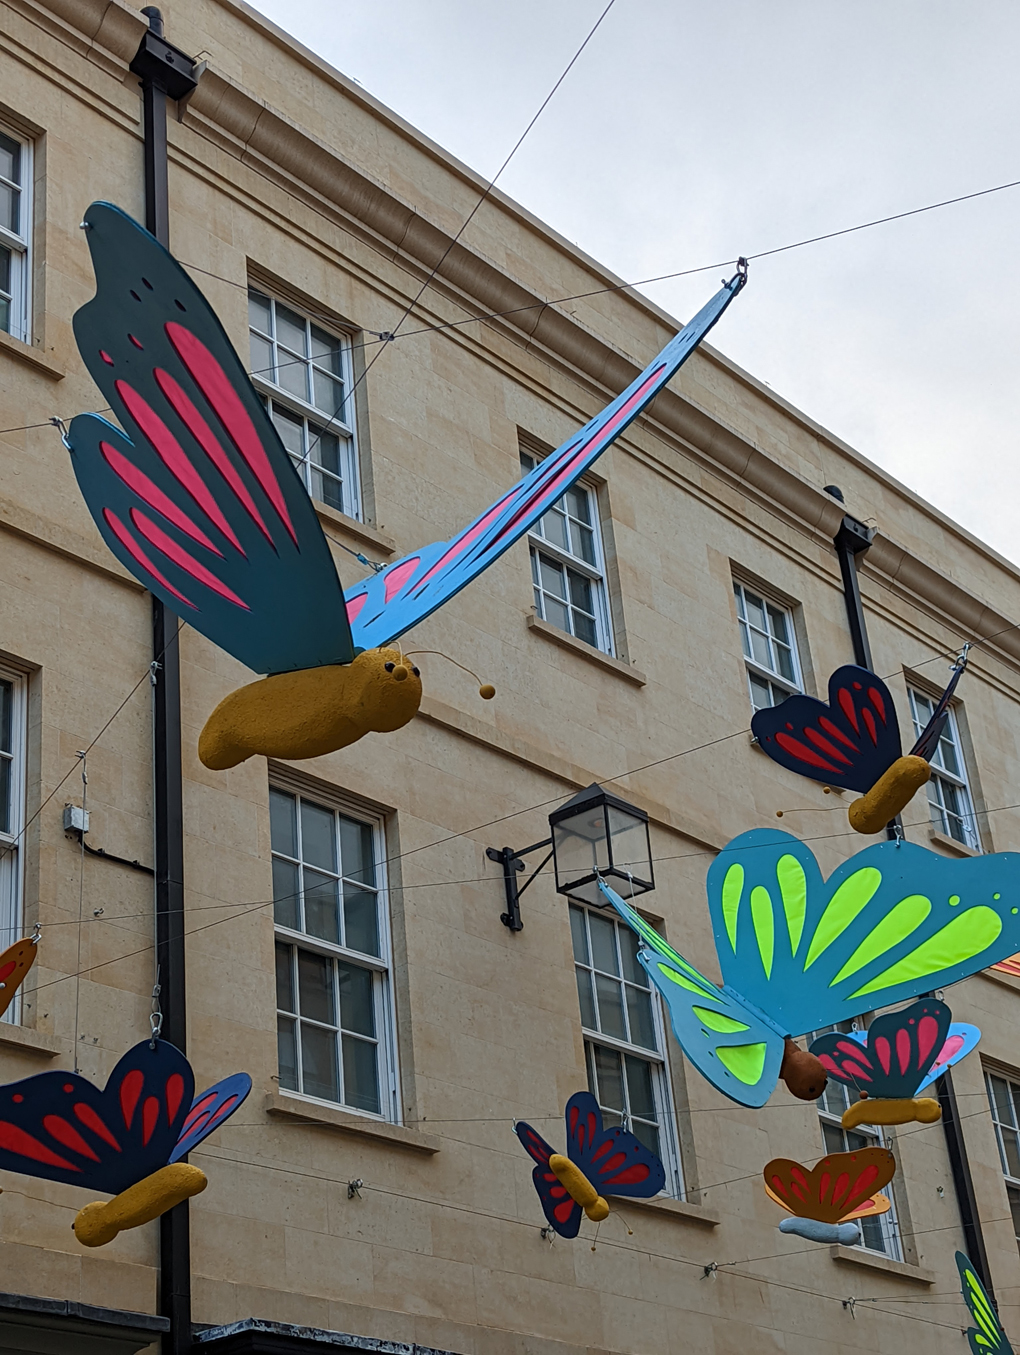 Large model butterflies hanging in a street in Bath